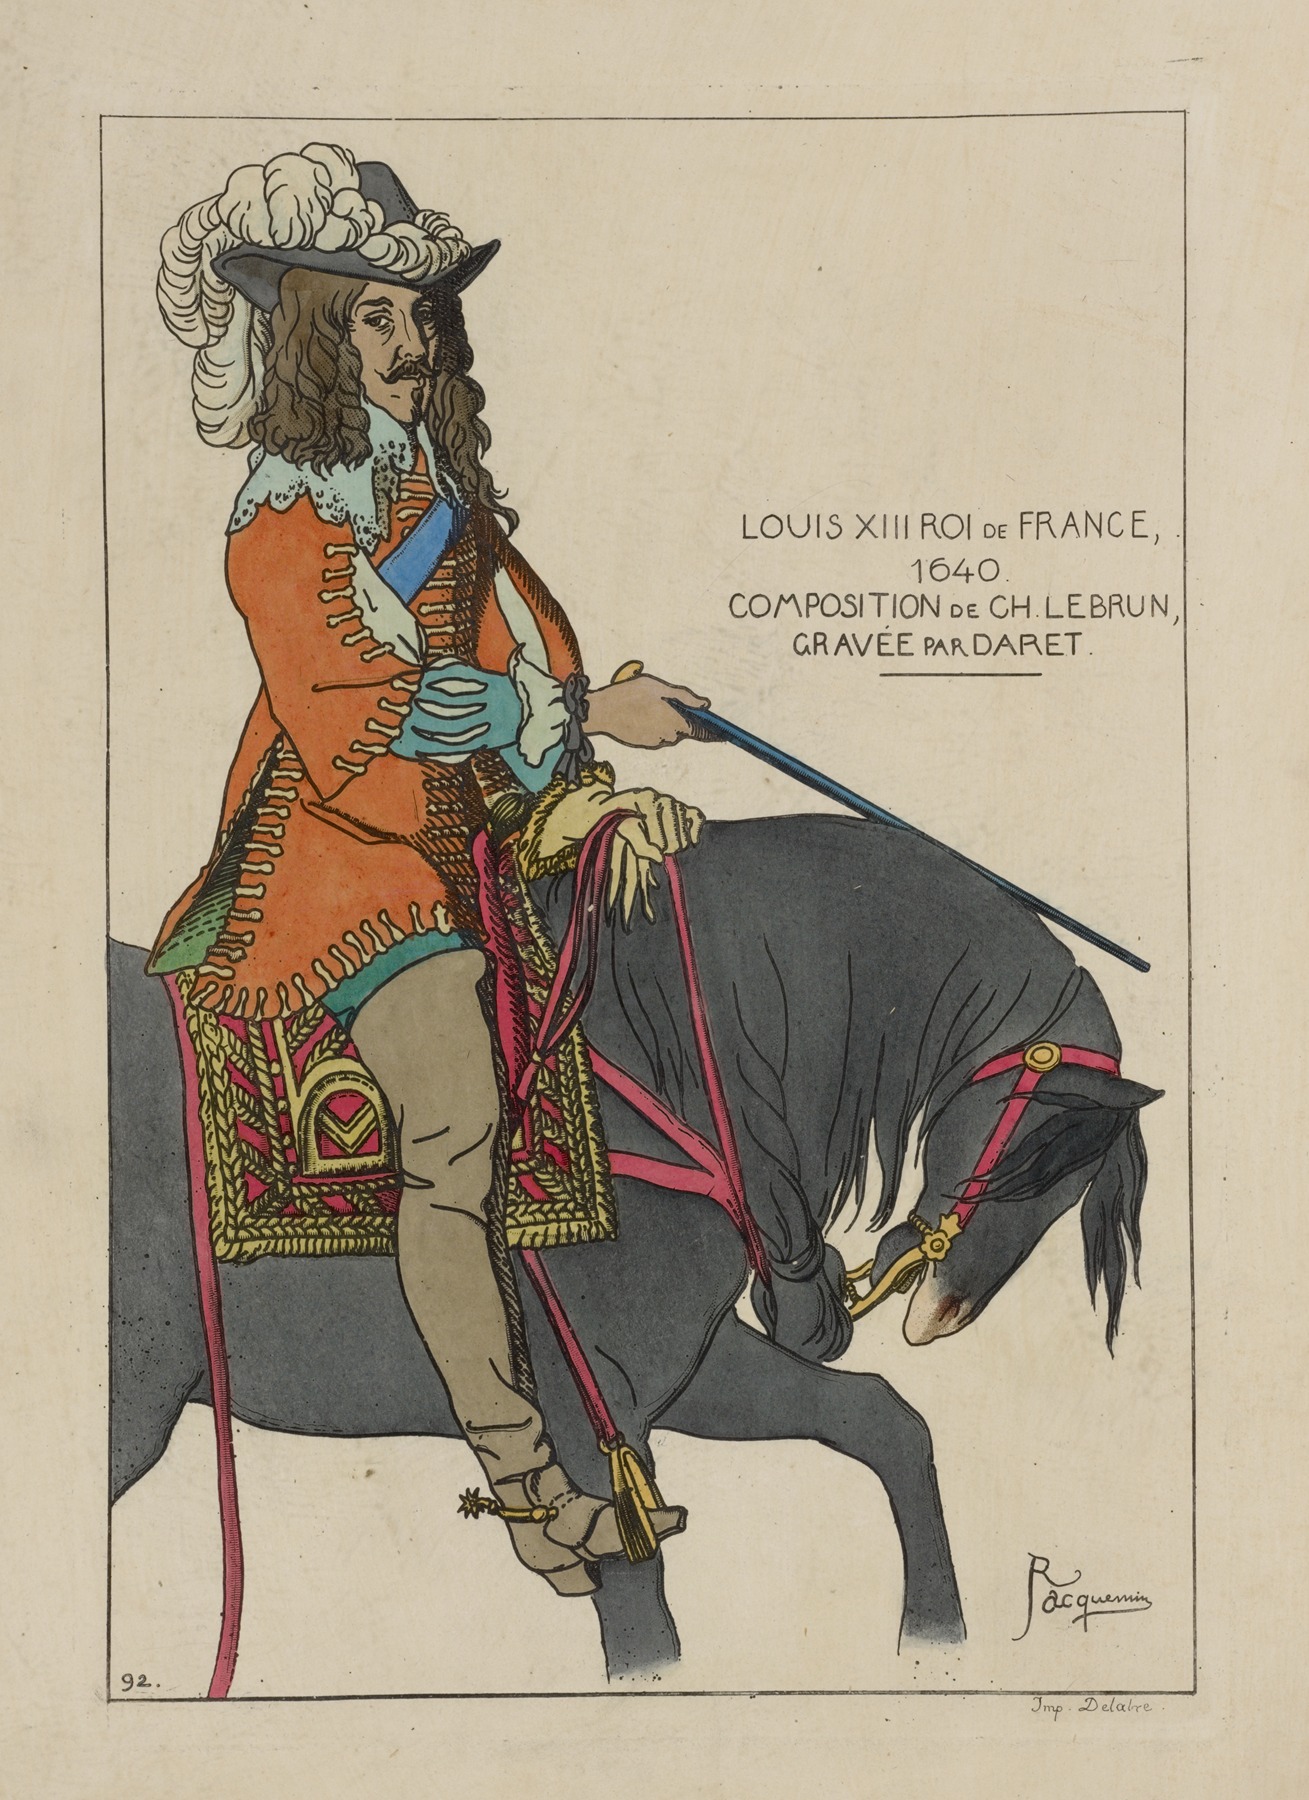 Raphaël Jacquemin - Louis XIII Roi de France, 1640. Composition de Ch[arles] Lebrun, gravée par daret.